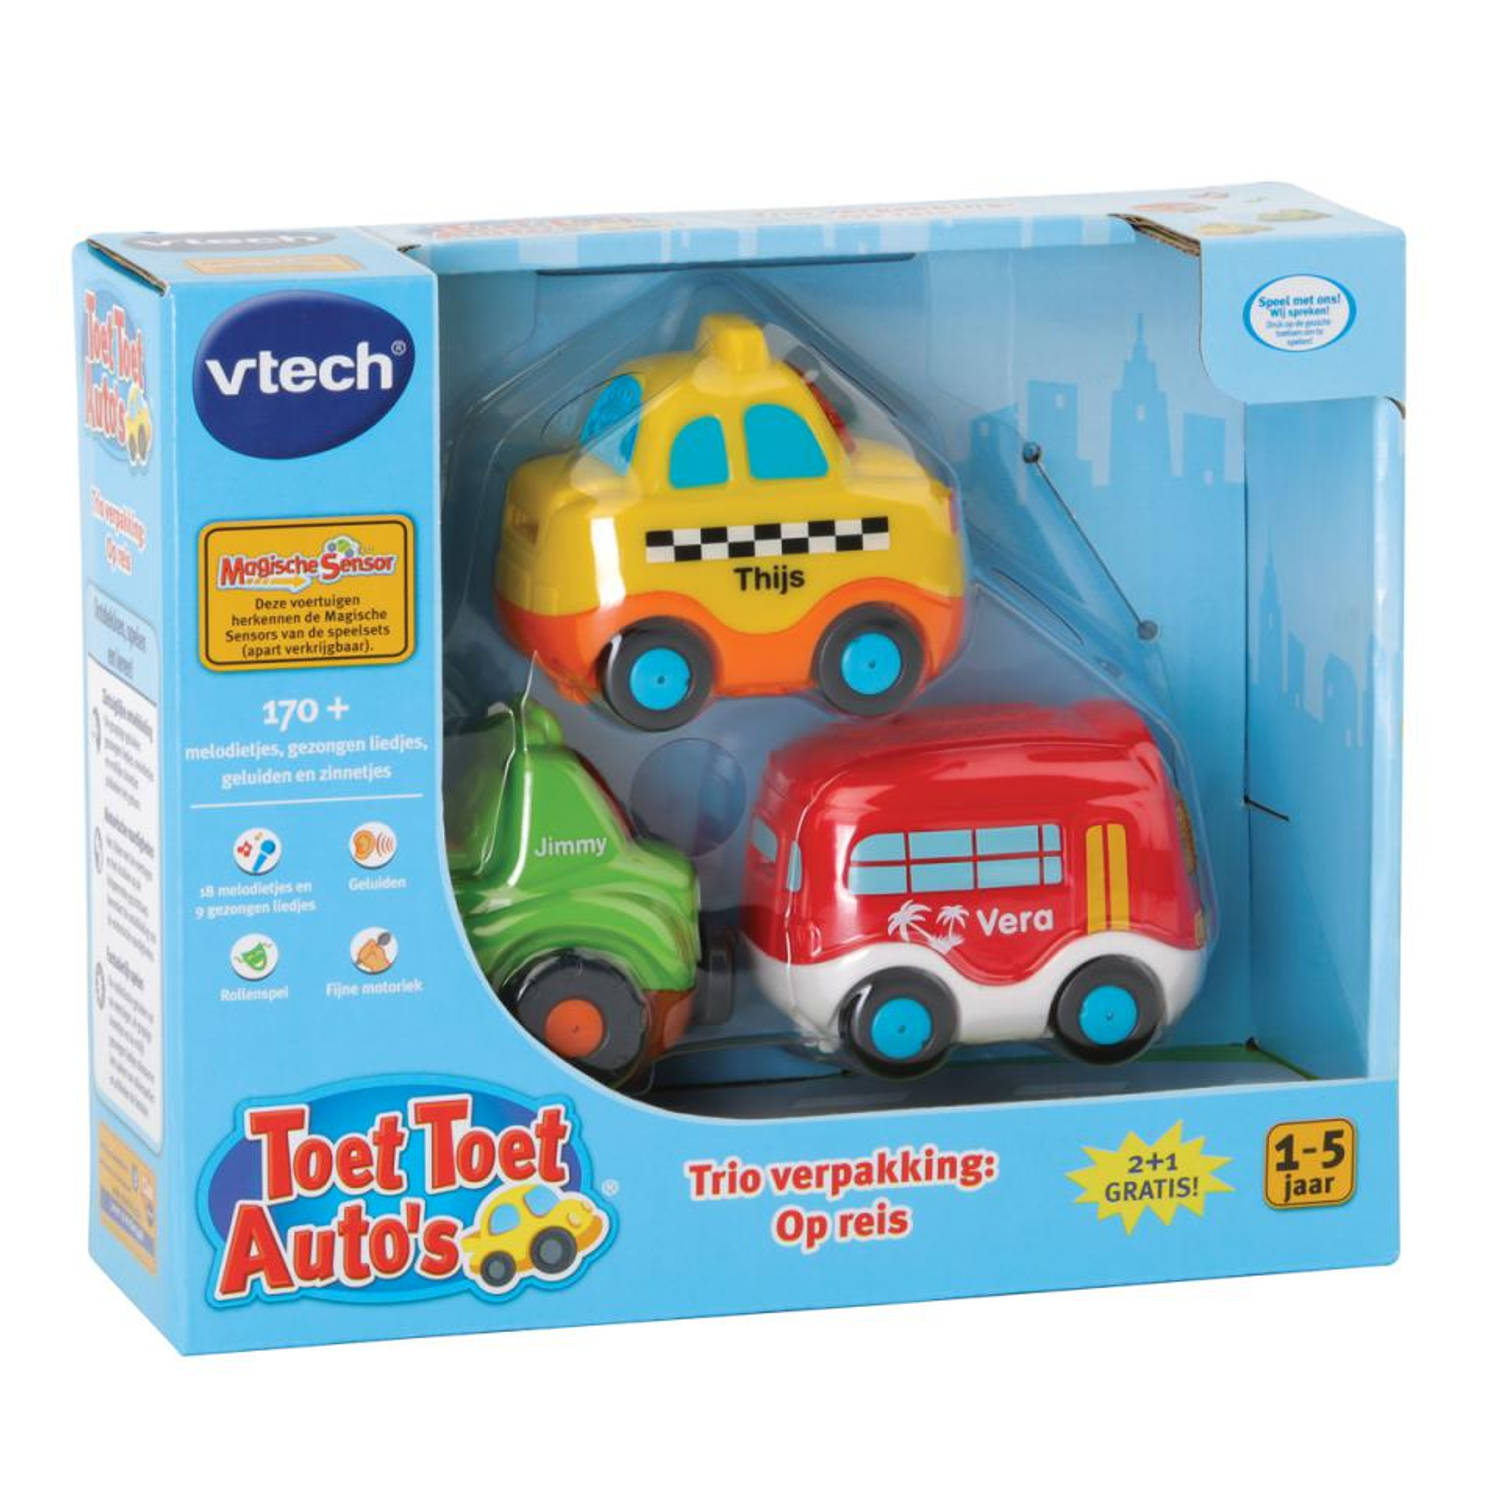 Uitsteken naaimachine contact Vtech Toet Toet Auto bundel - City | Blokker